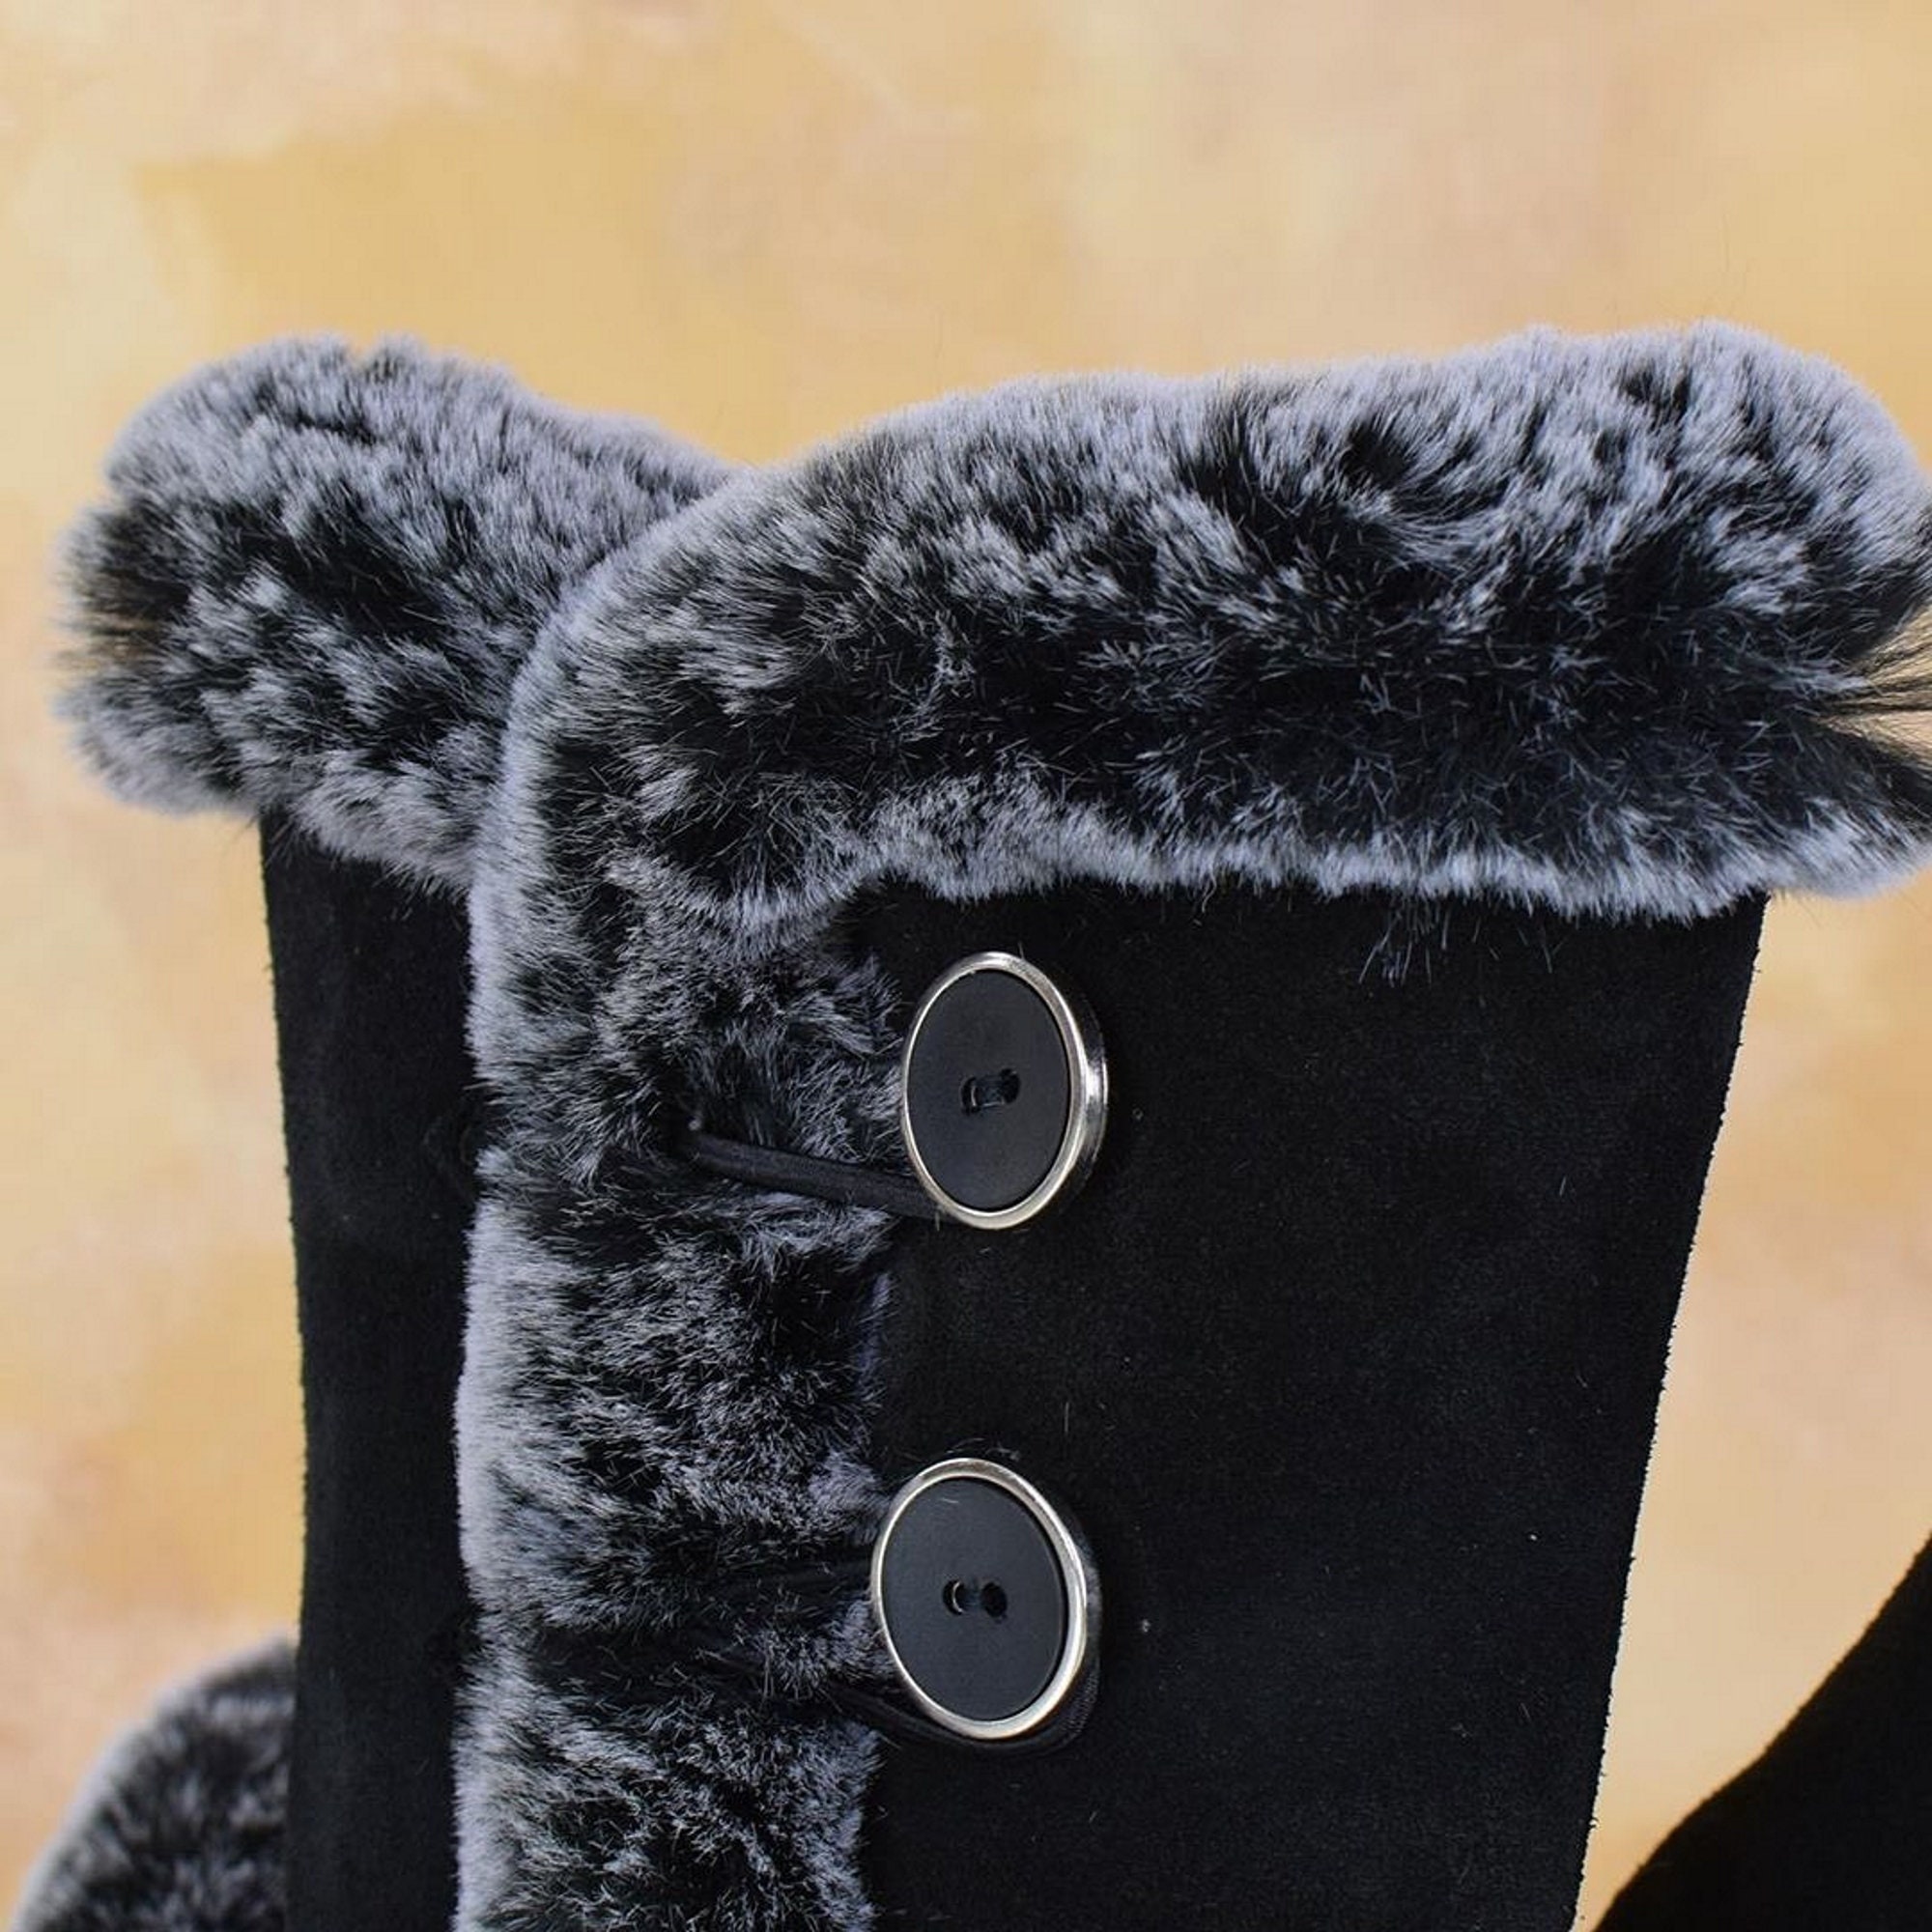 Women's Russian sheepskin boots warm 100% genuine leather | Etsy